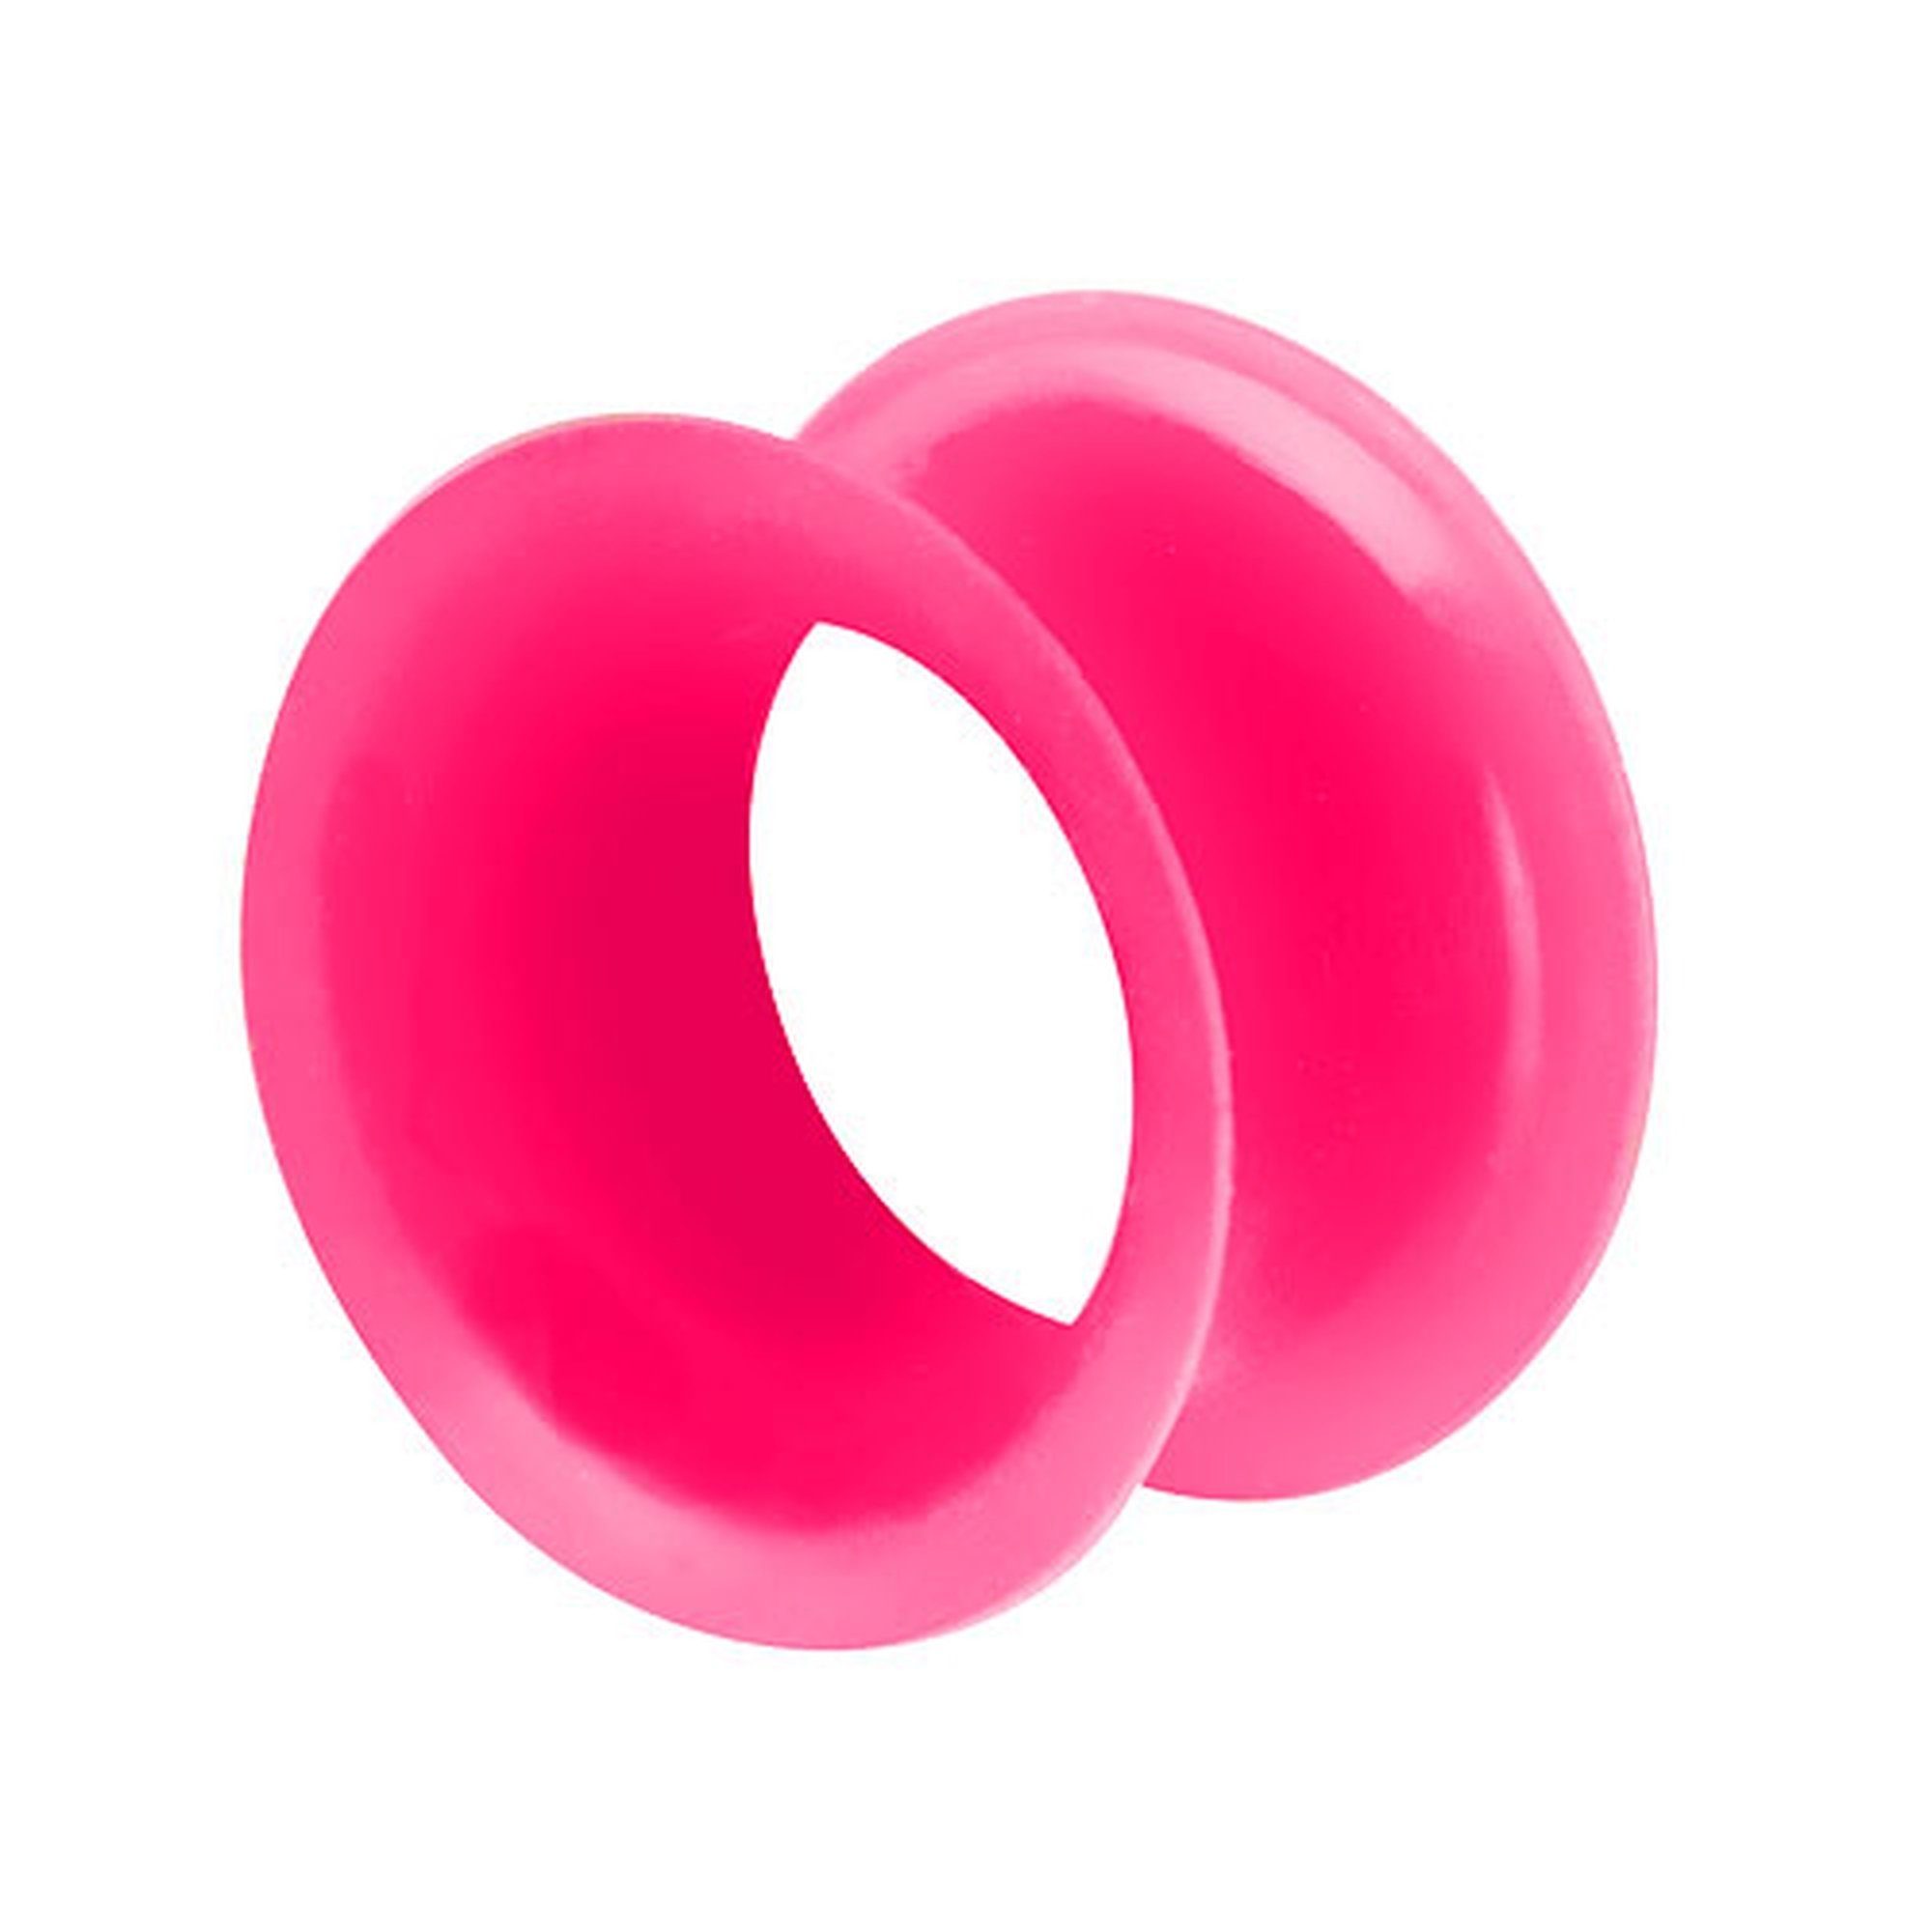 Taffstyle Plug Piercing Hoher dünner Rand Flexibel Weich Farbig, Flesh Tunnel Ohr Plug Silikon Flexibel Weich Rund Creole Farbig Bunt Pink